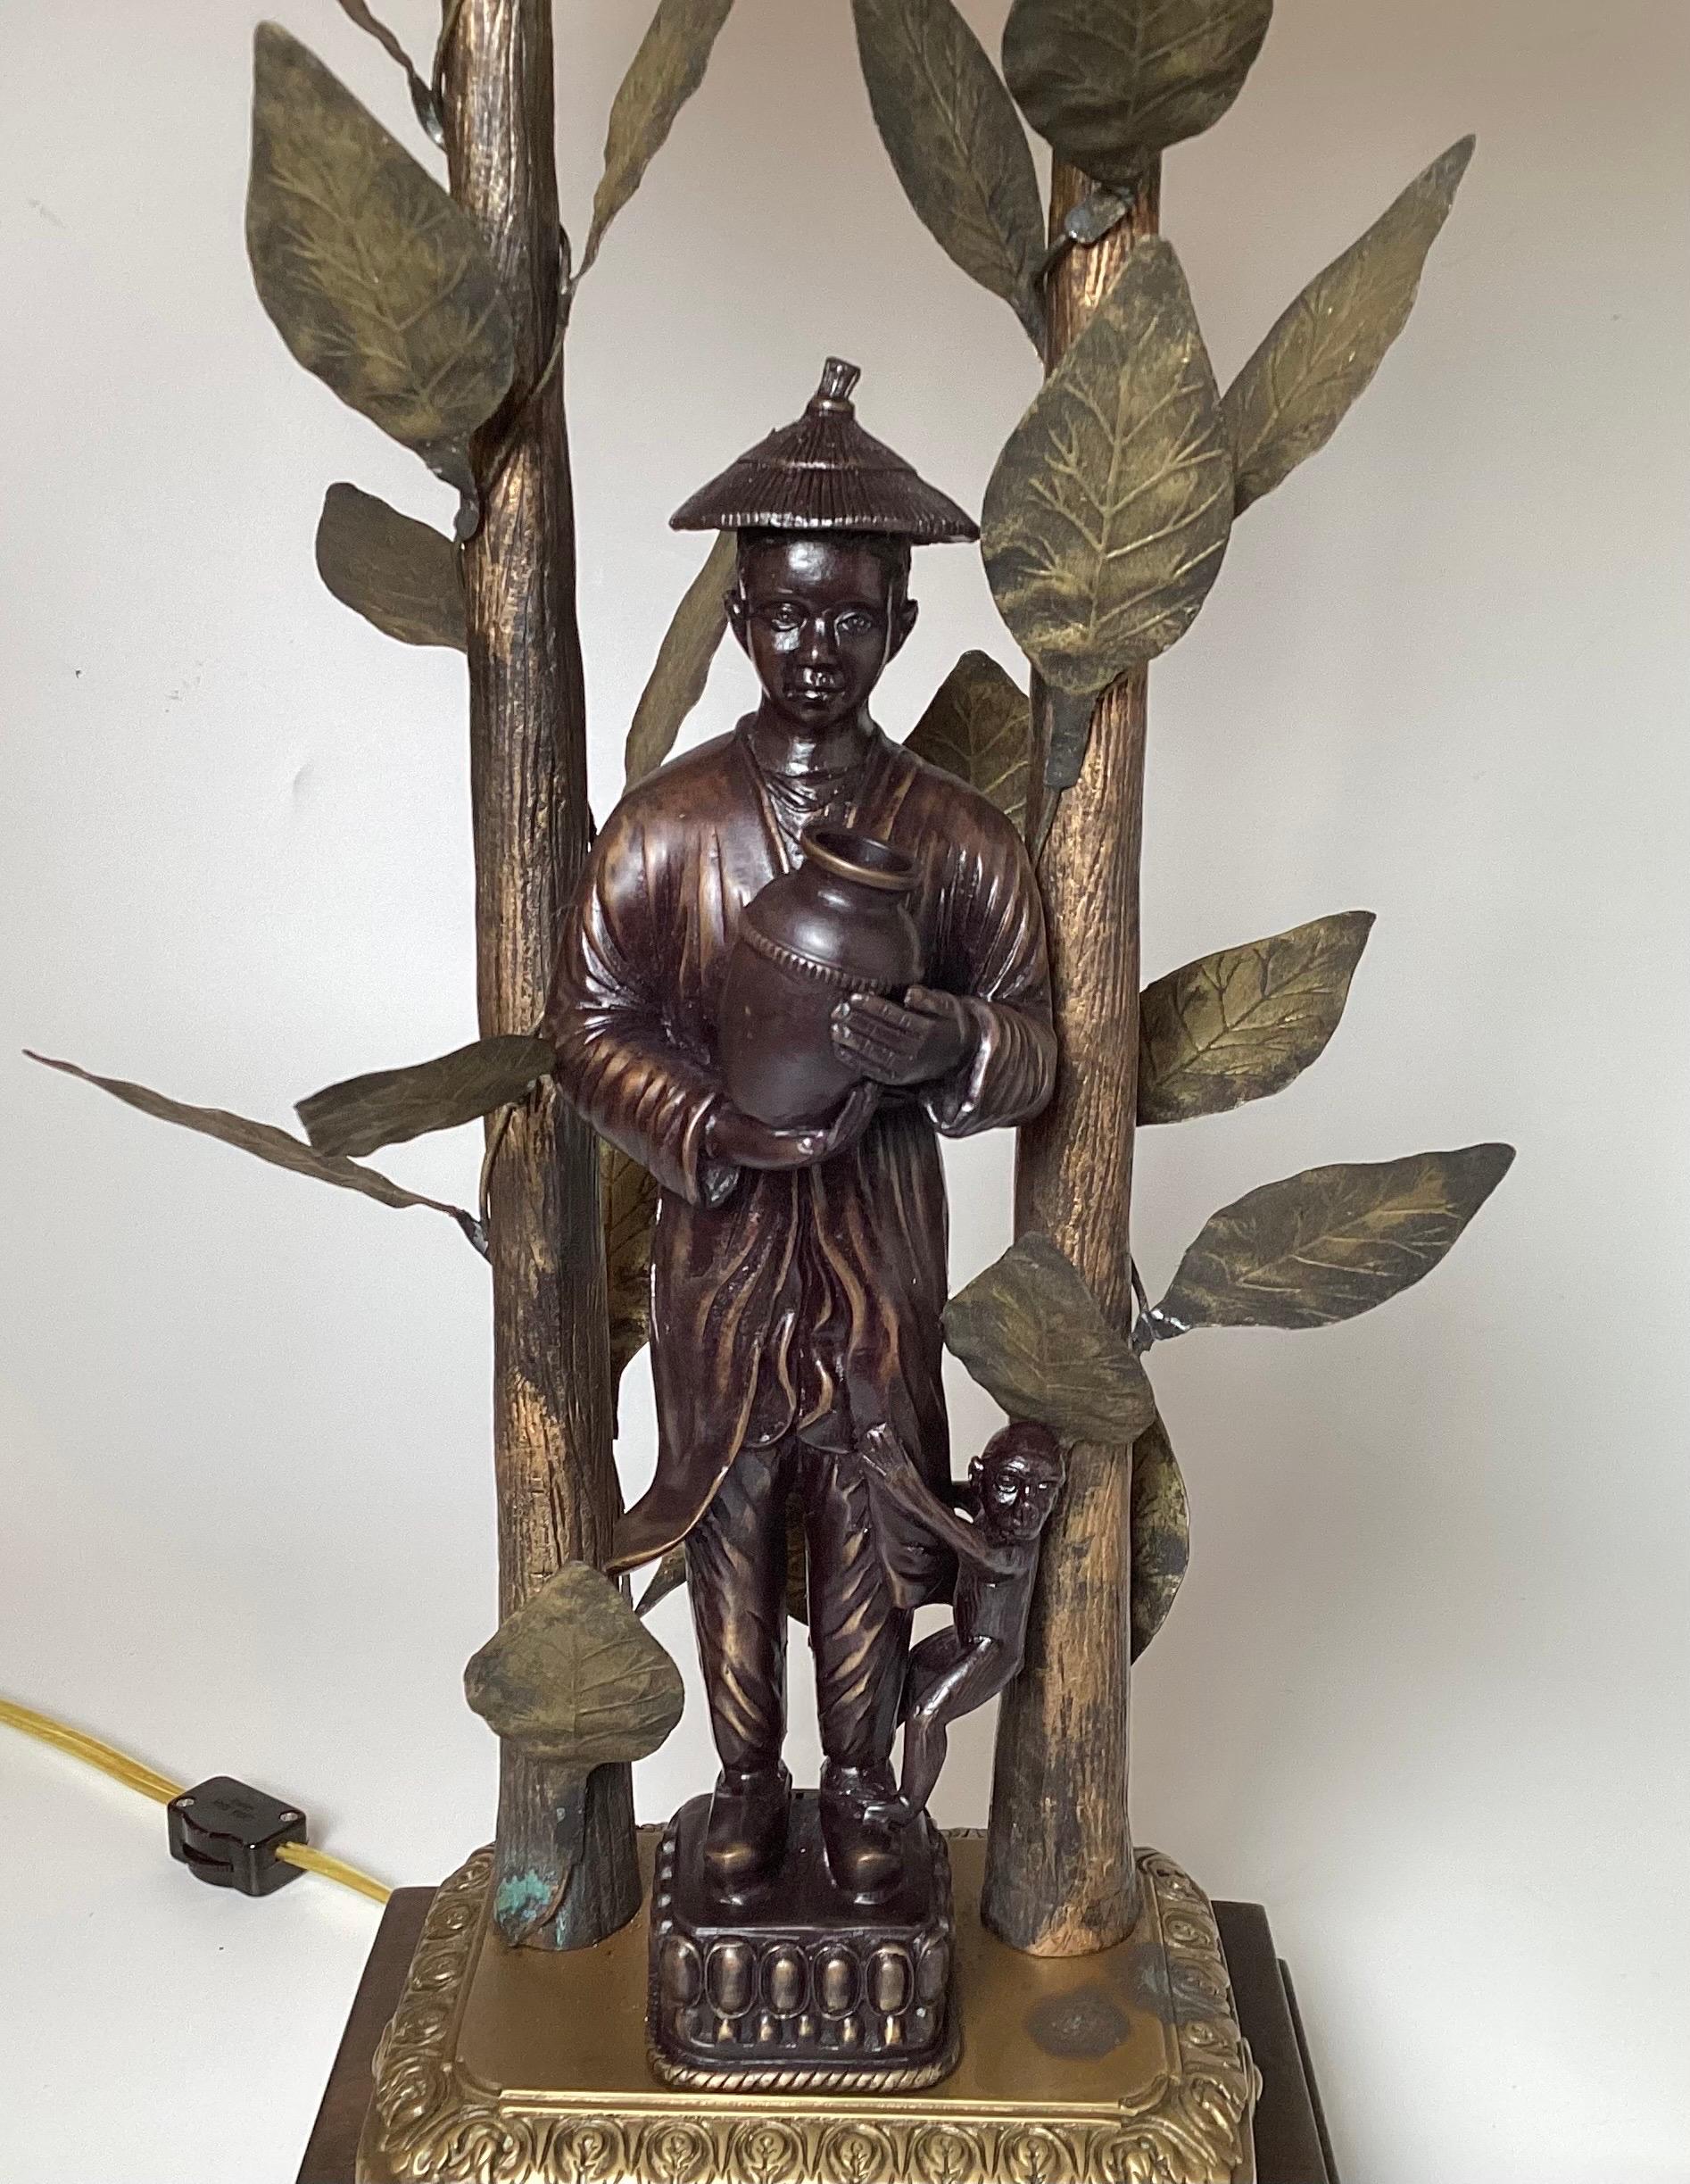 Une paire de lampes fantaisistes patinées de style Chinoiserie par Frederick Cooper. Le motif de bambou est composé de feuilles de bambou et d'un homme asiatique portant une cruche d'eau. Le bronze est bicolore, ce qui met en valeur le magnifique